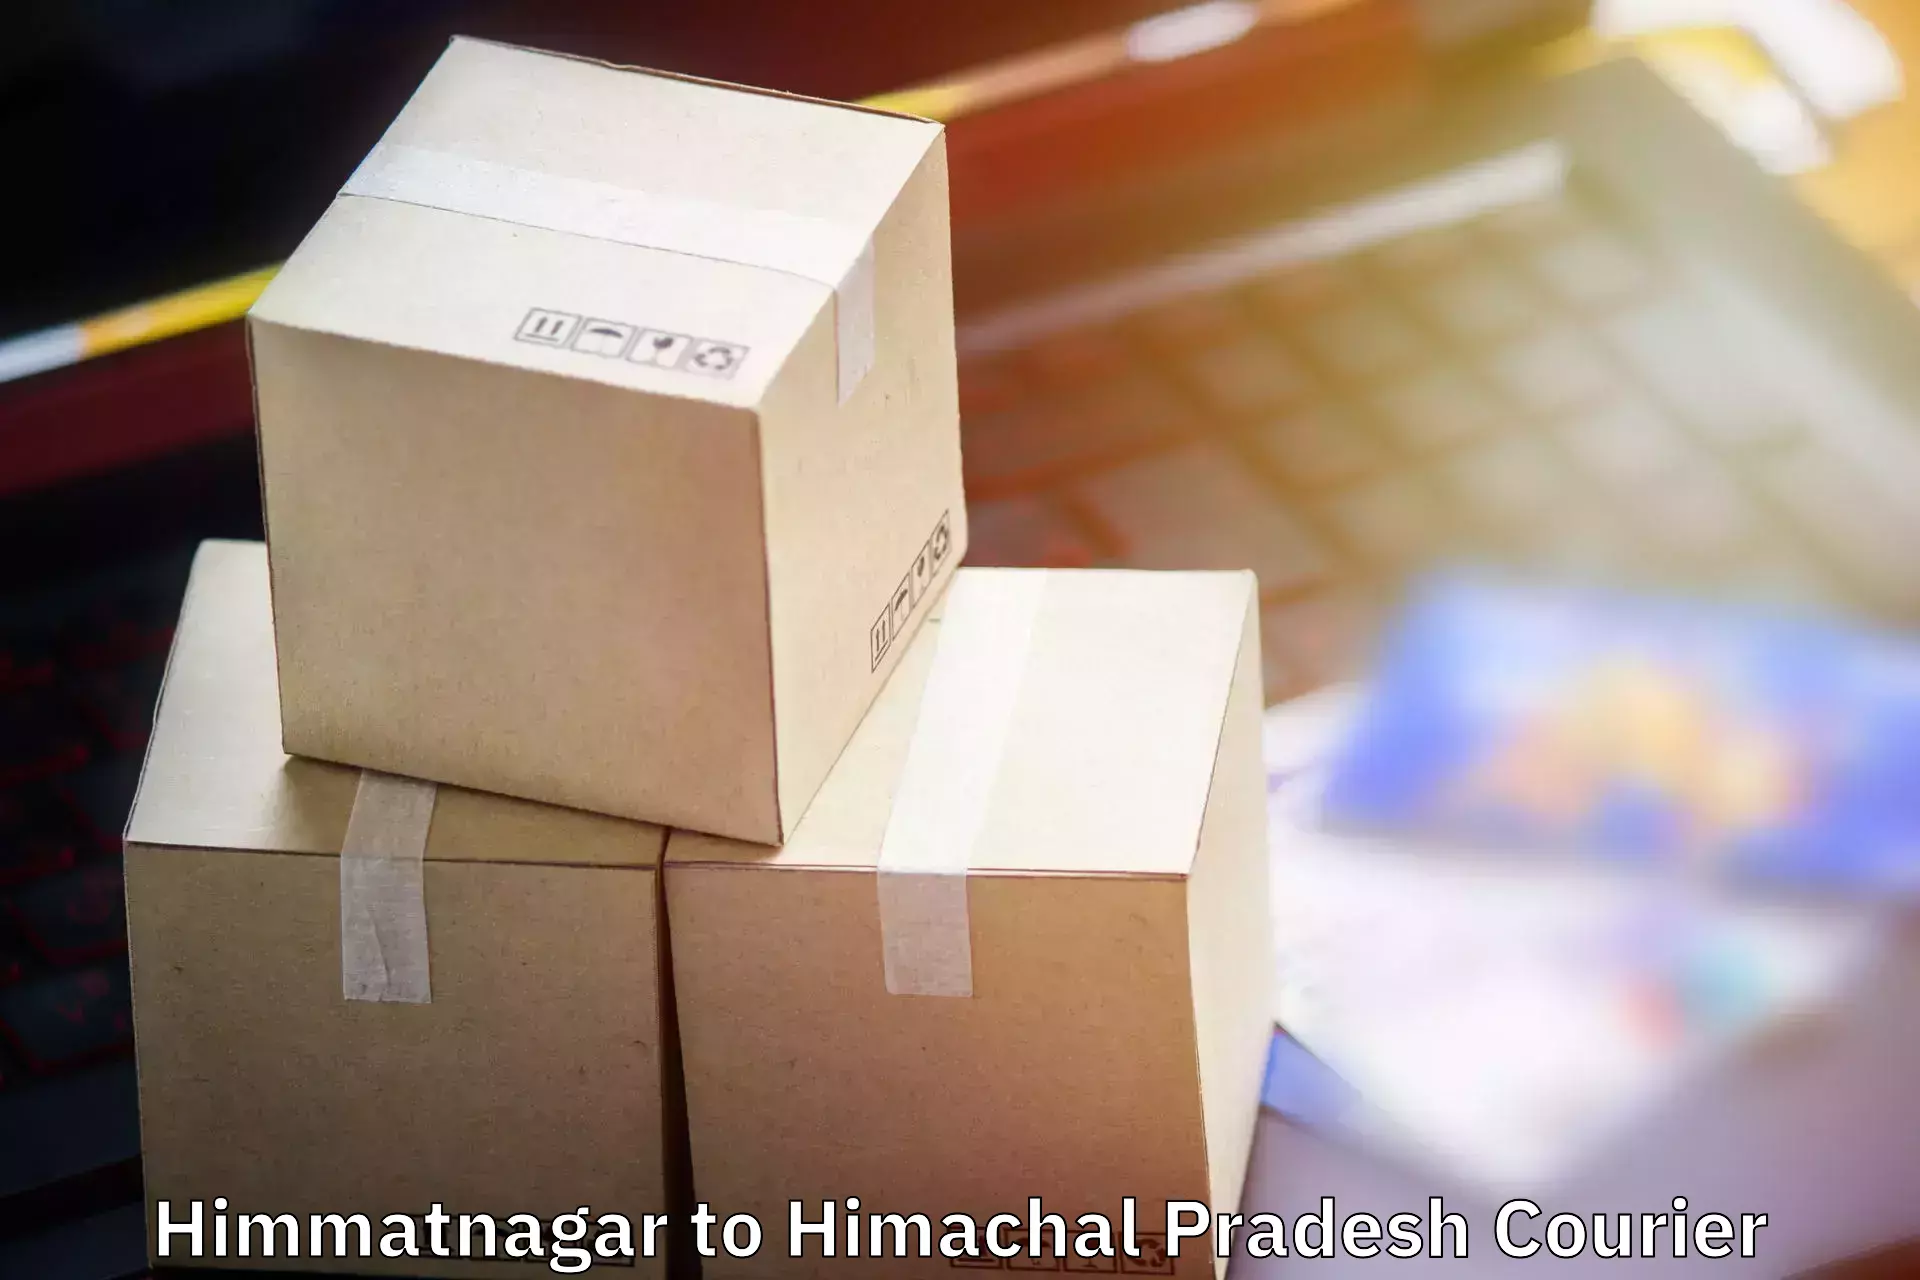 Baggage transport network Himmatnagar to Sundar Nagar